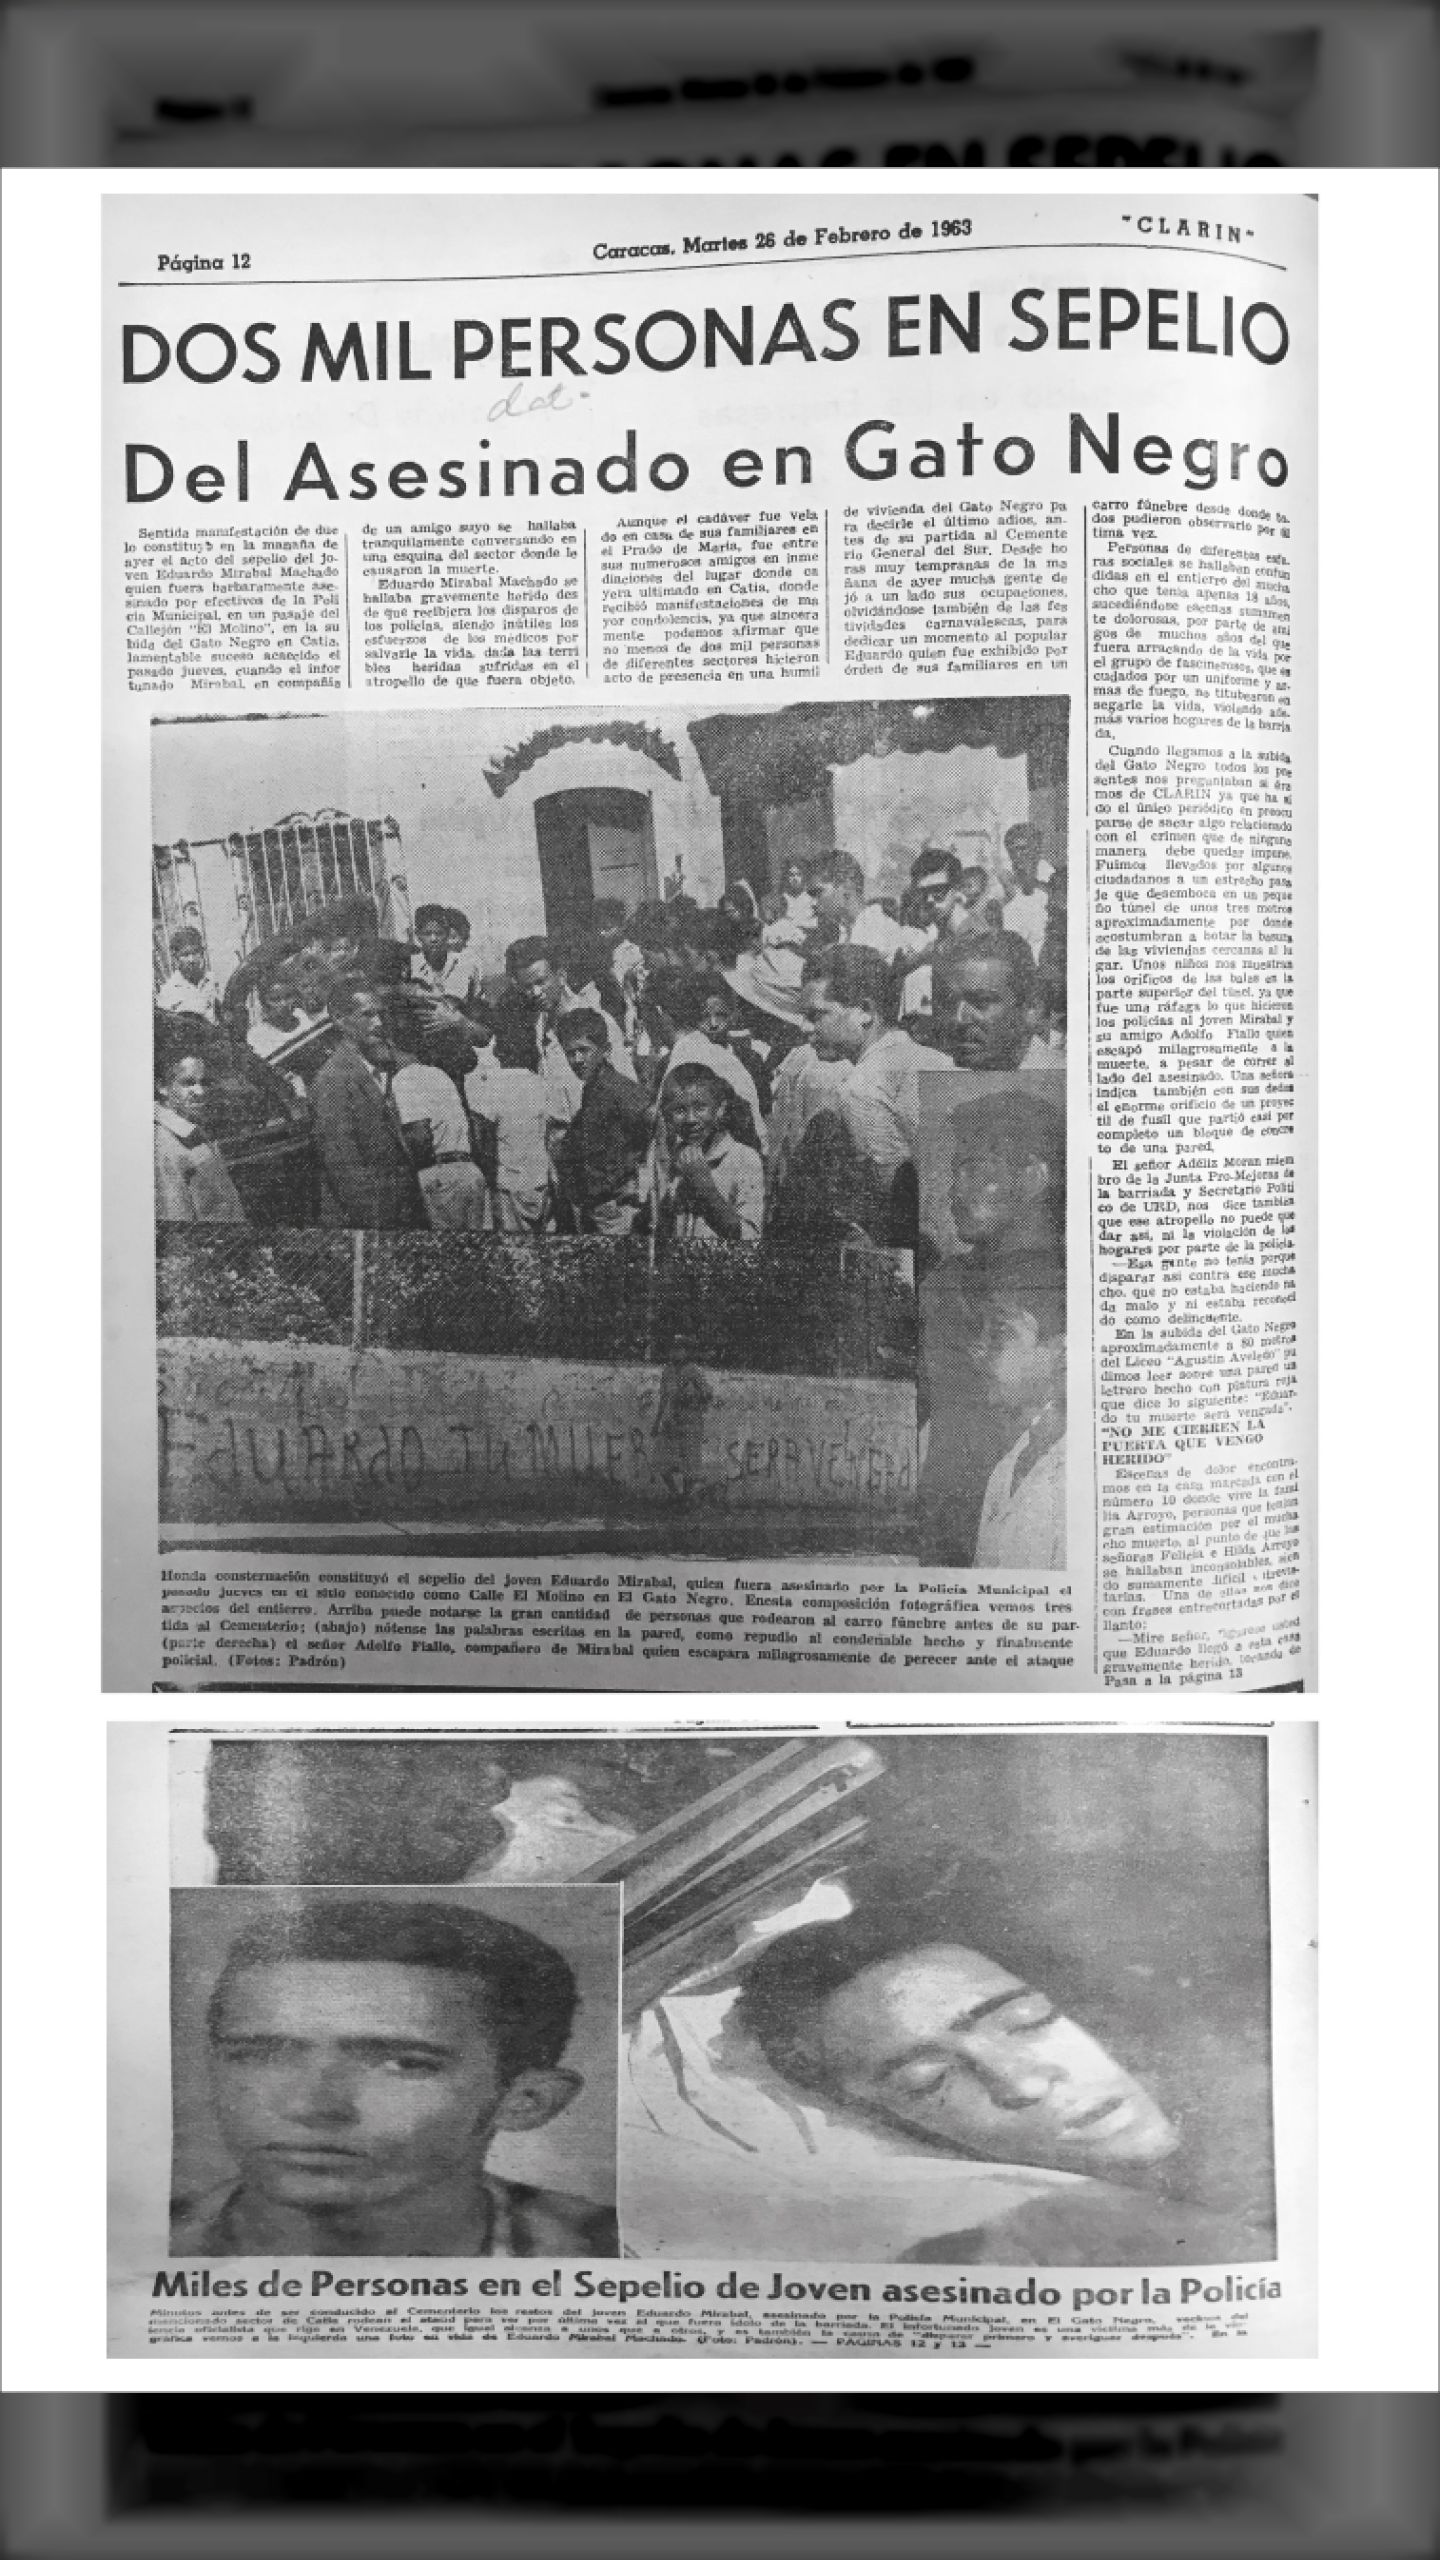 MILES DE PERSONAS EN EL SEPELIO DE EDUARDO MIRABAL MACHADO (Diario Clarín, 26 de febrero 1963)